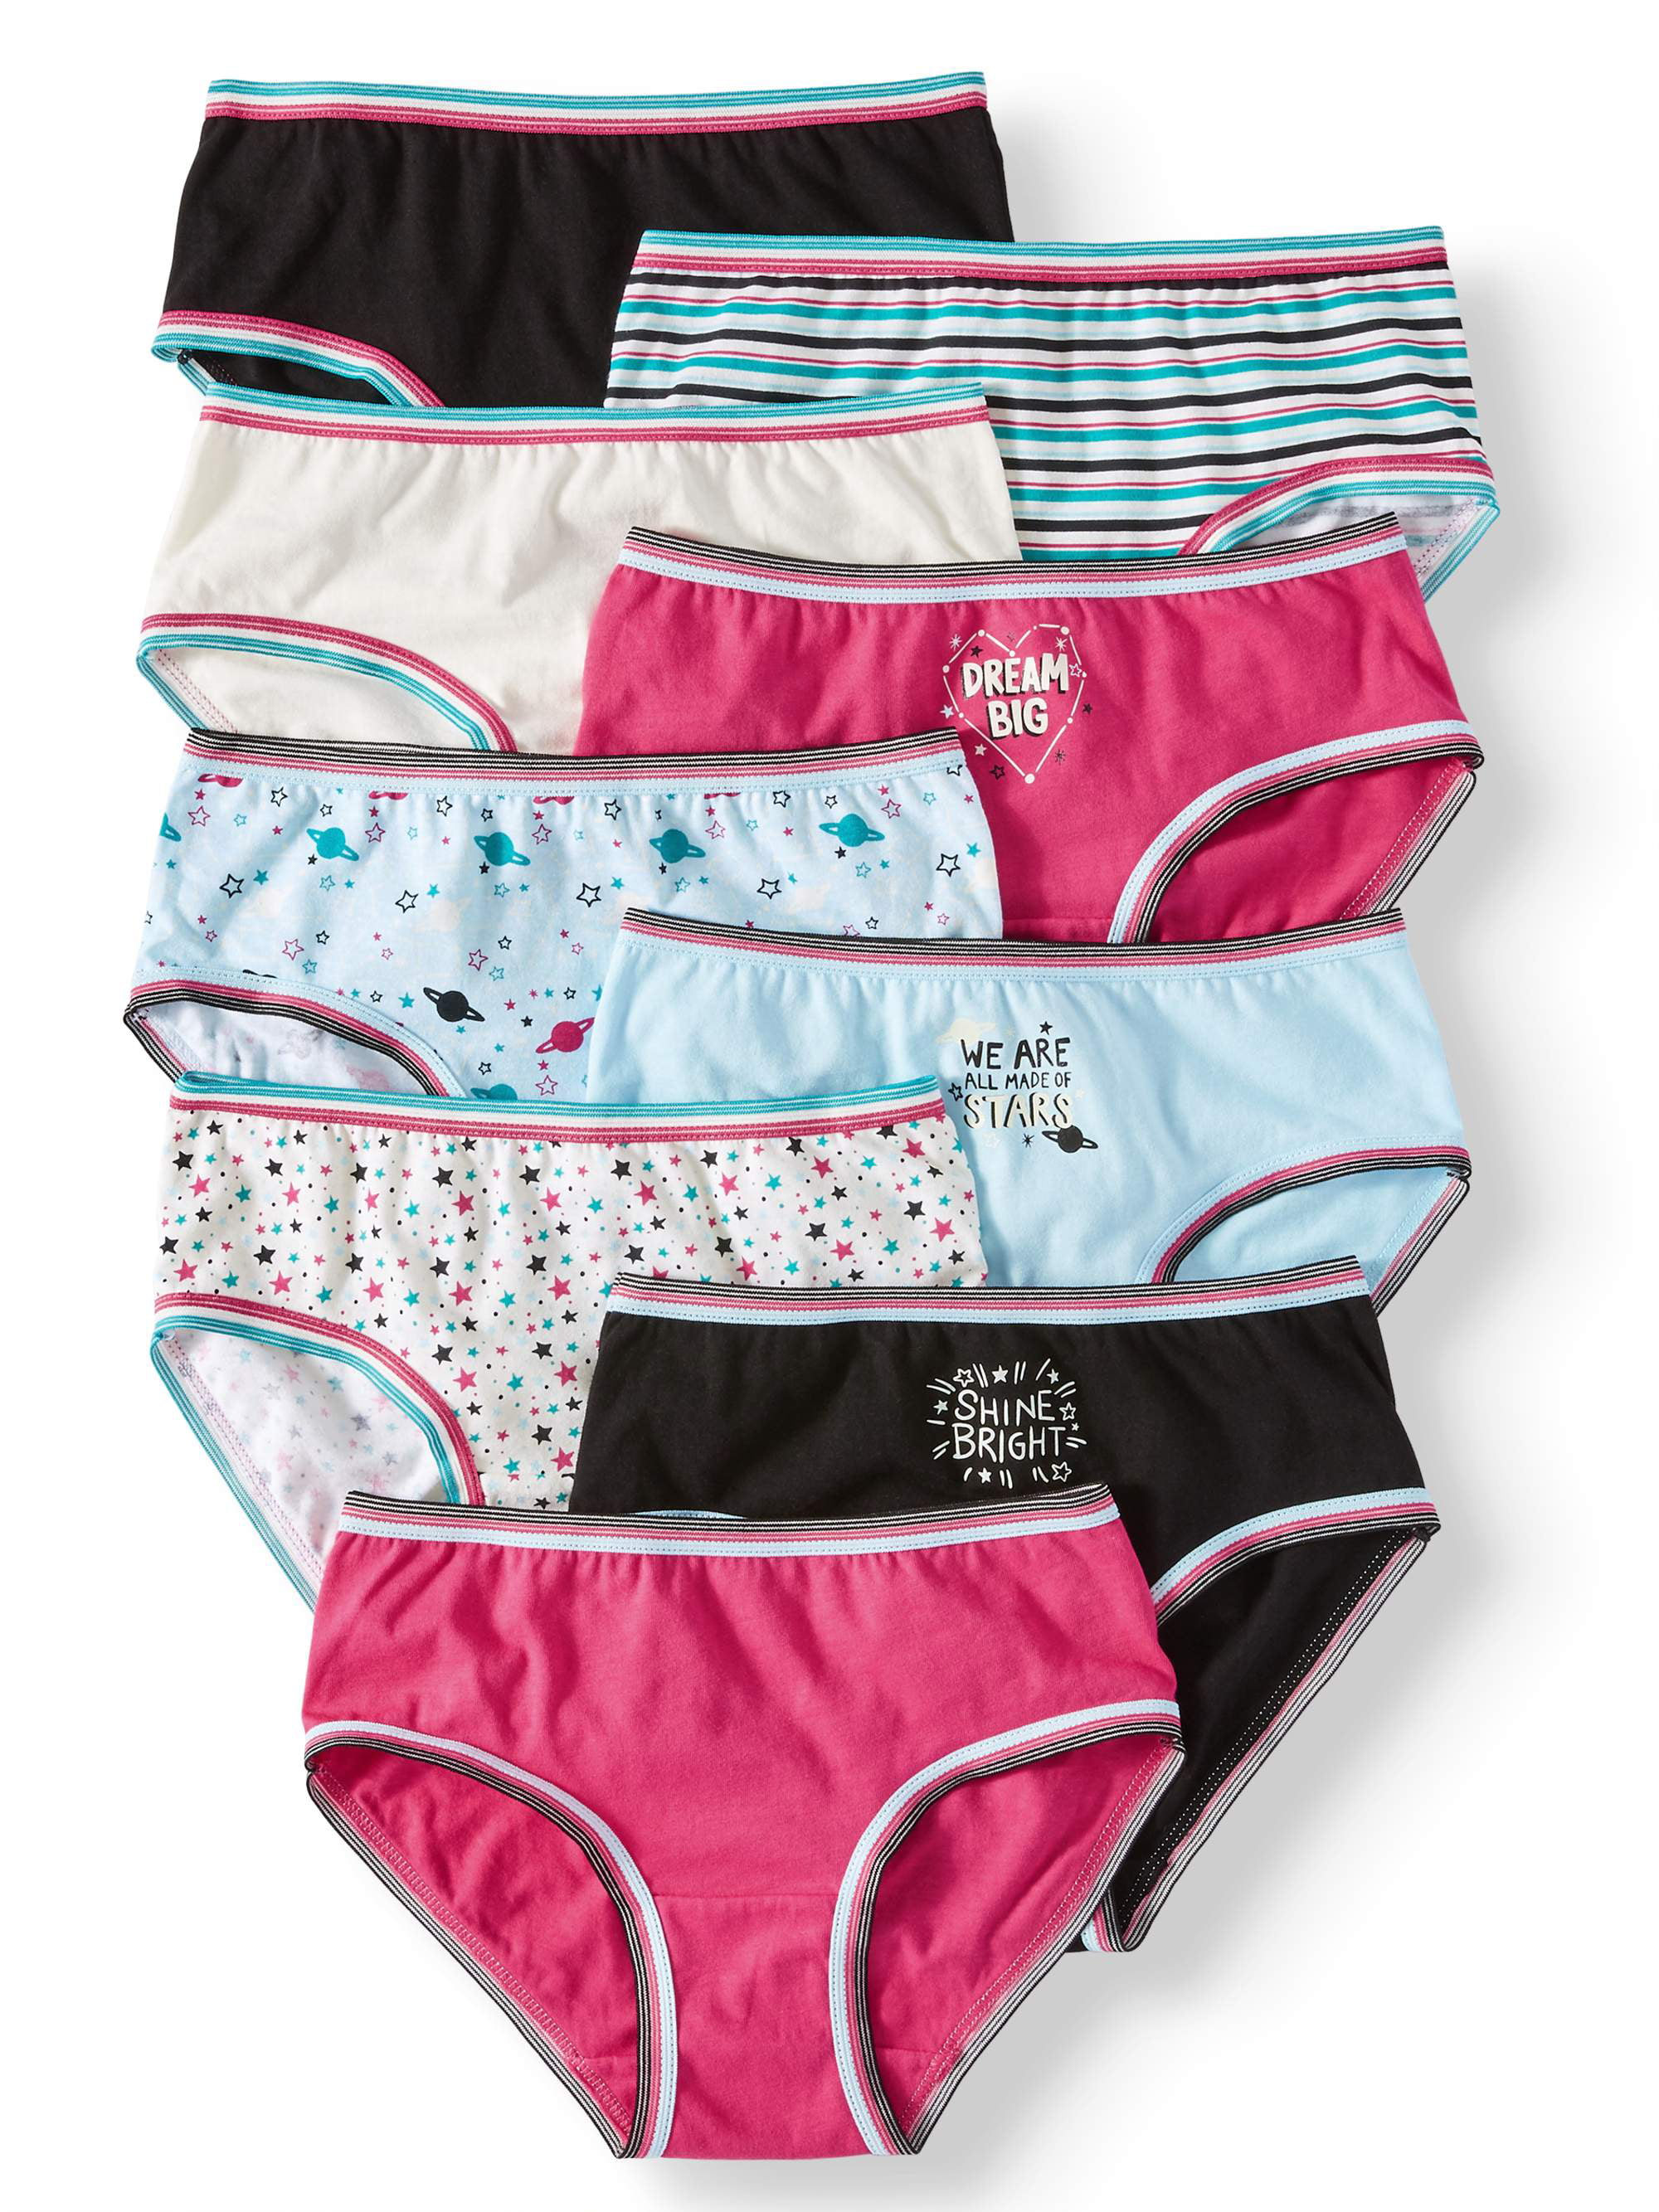 Wonder Nation Girls Underwear, 9 Pack 100% Cotton Brief Panties